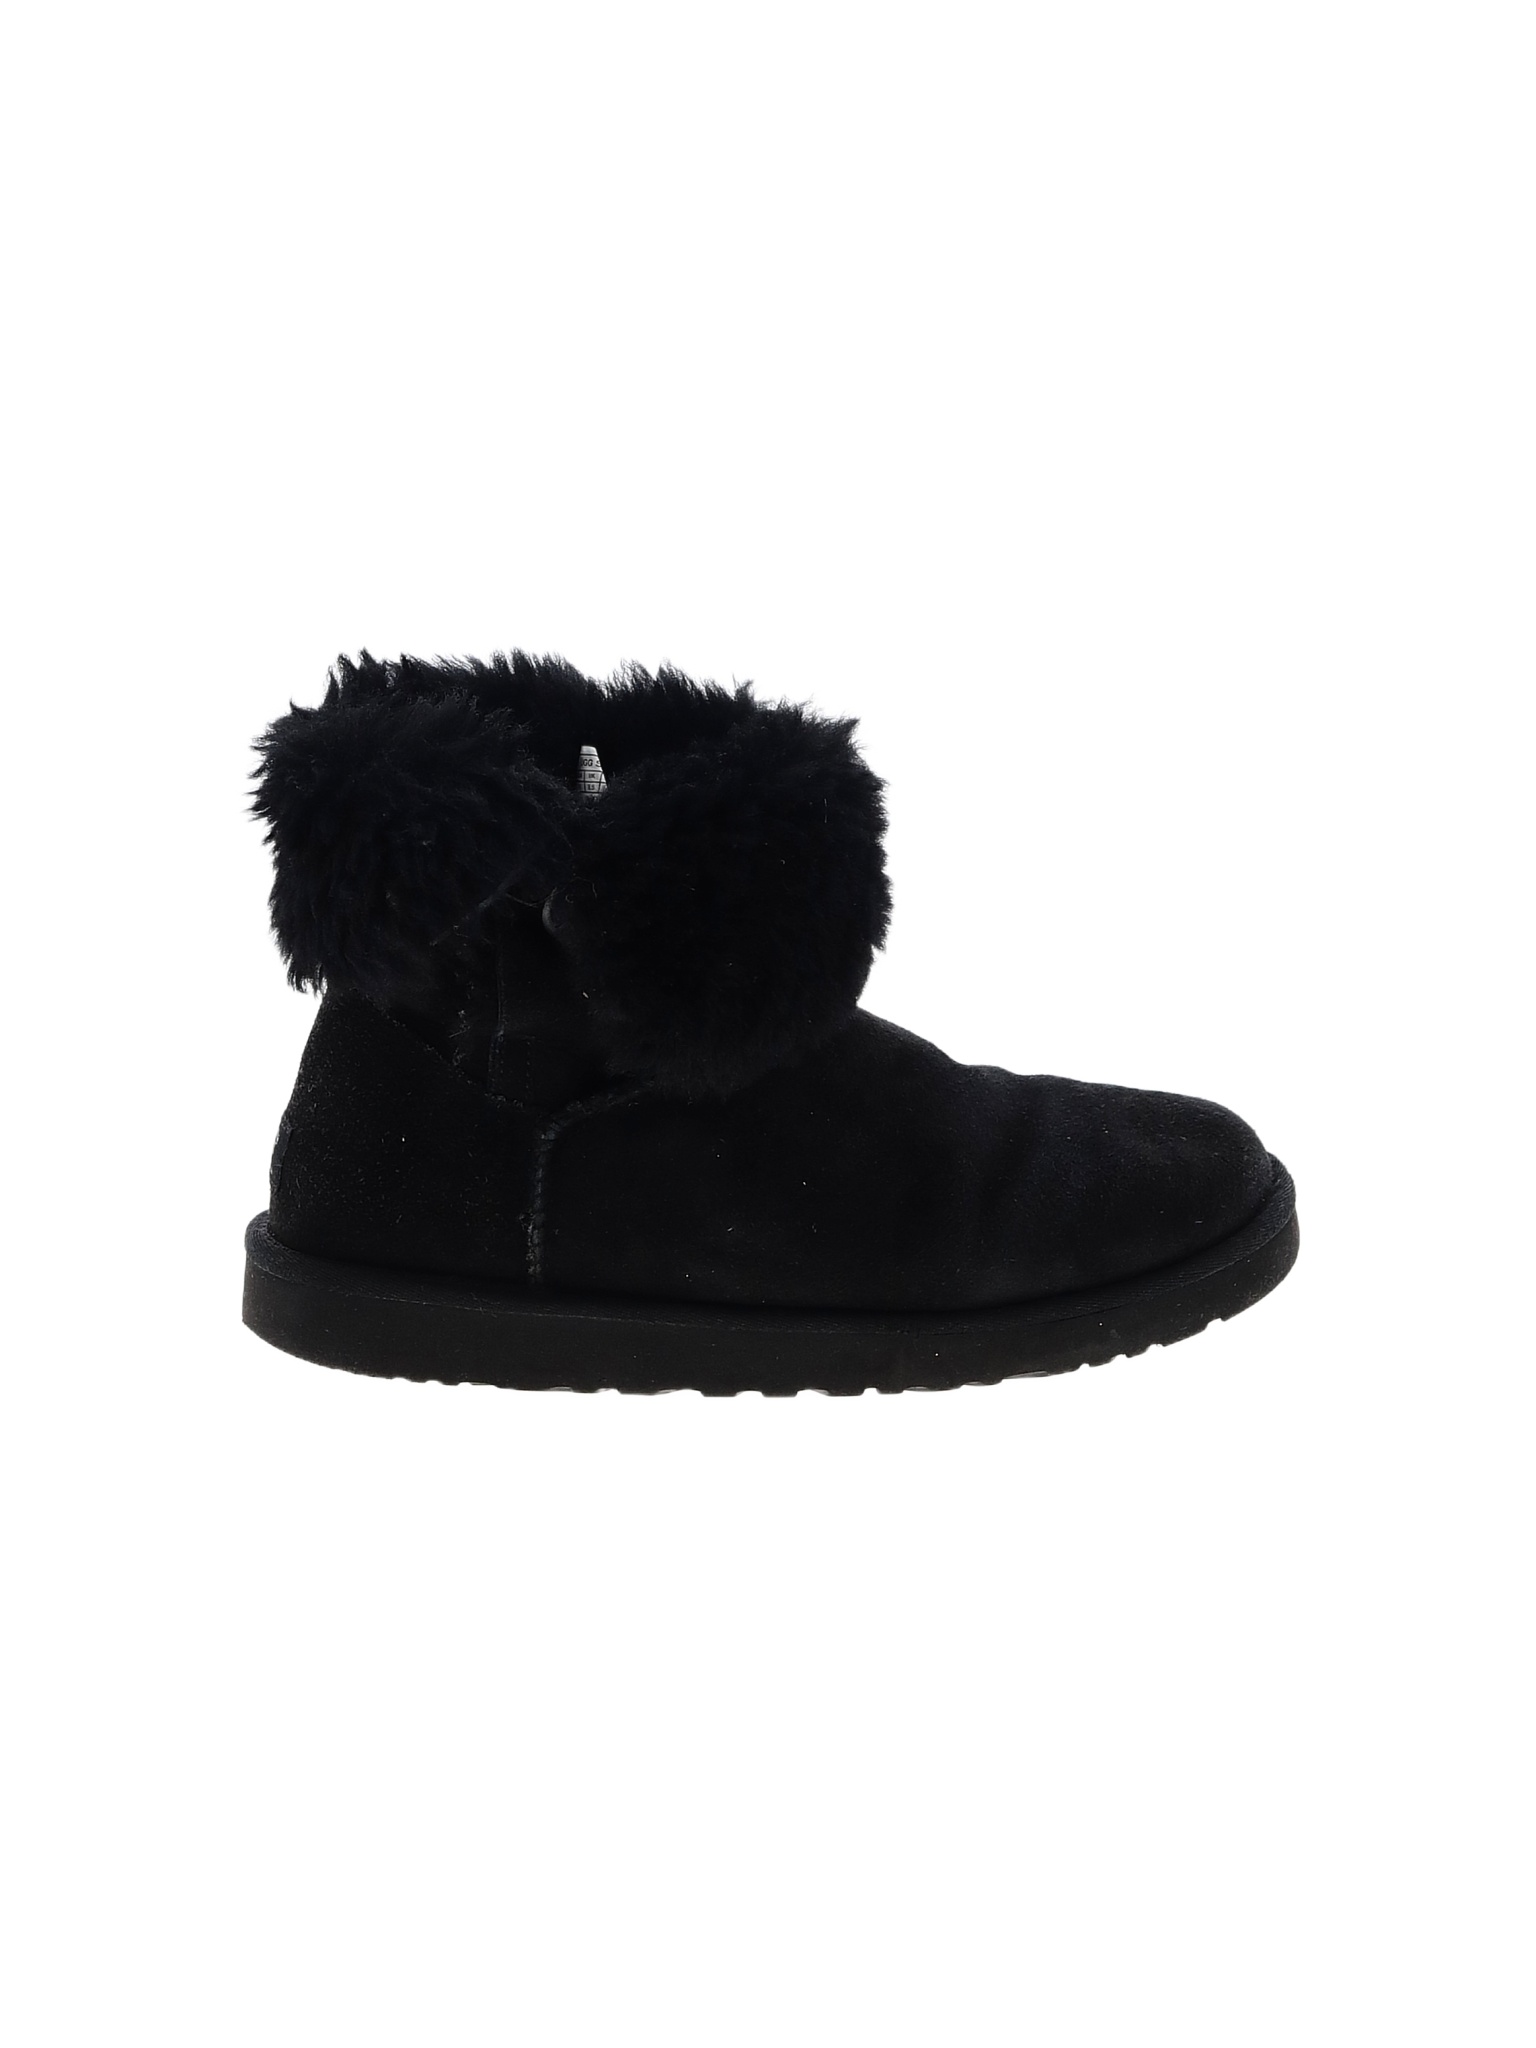 Ugg Australia Solid Black Ankle Boots Size 10 - 59% off | thredUP